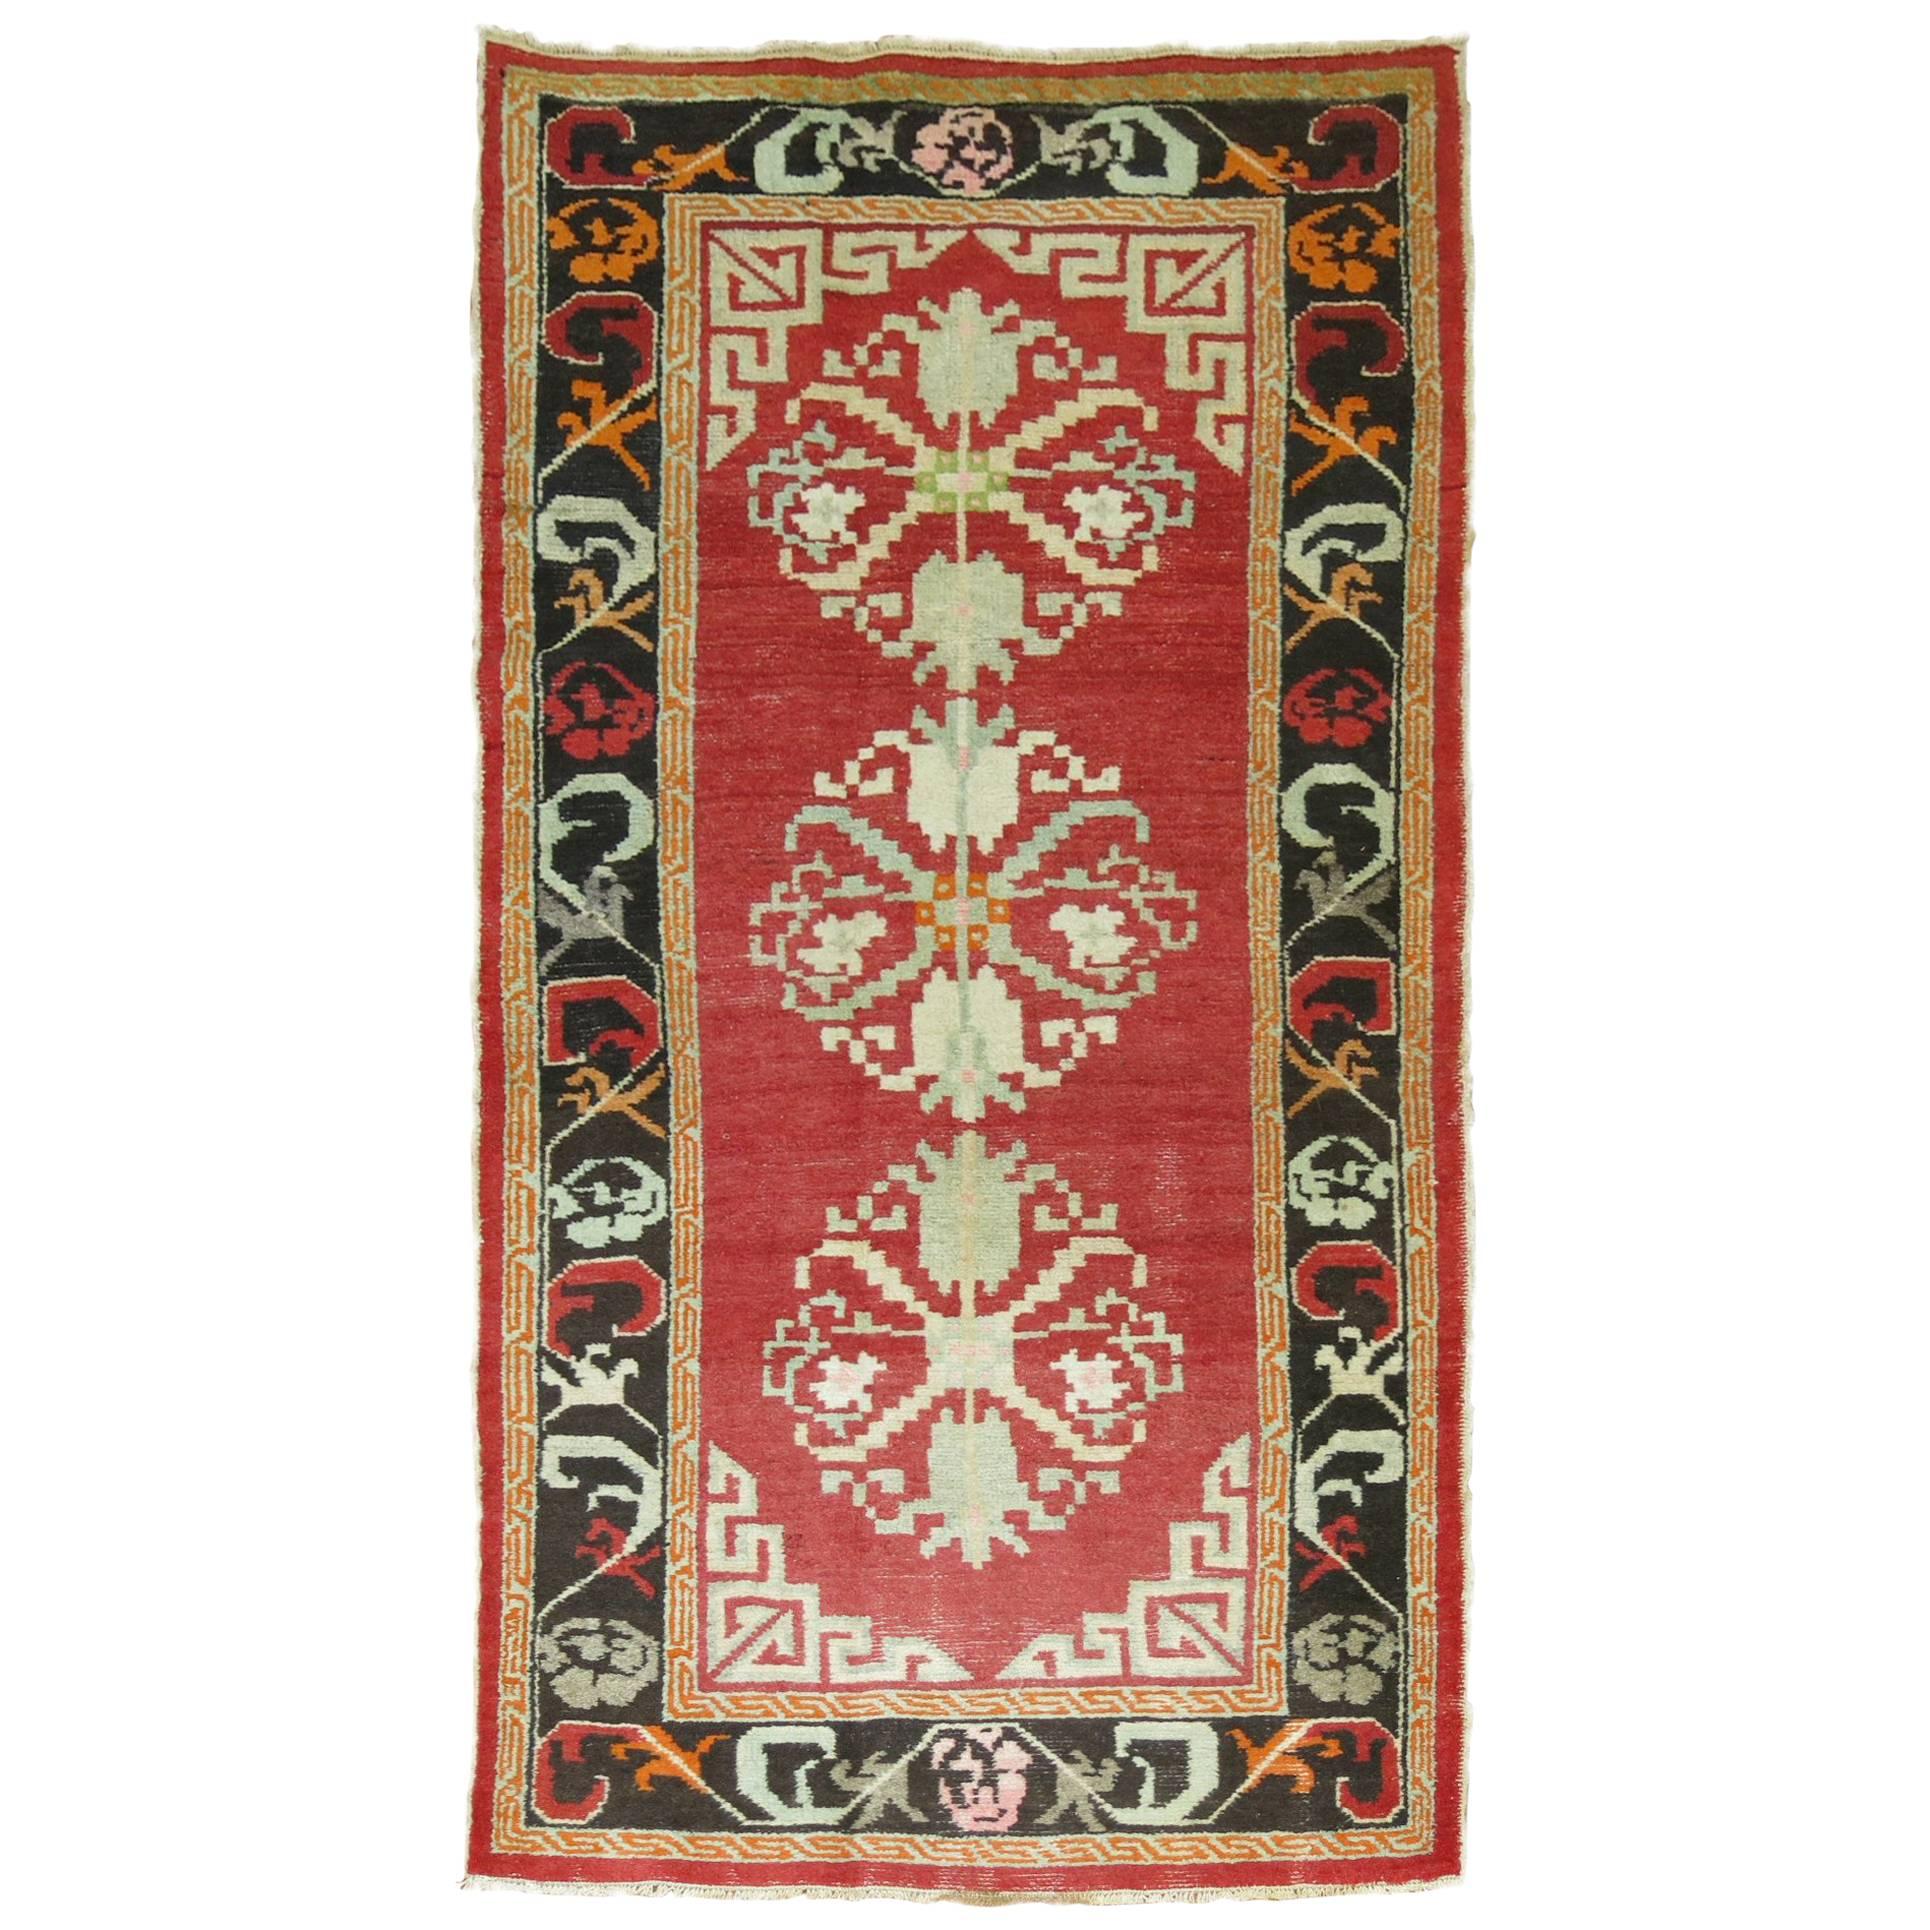 Tapis turc influencé par les tapis de style mongol